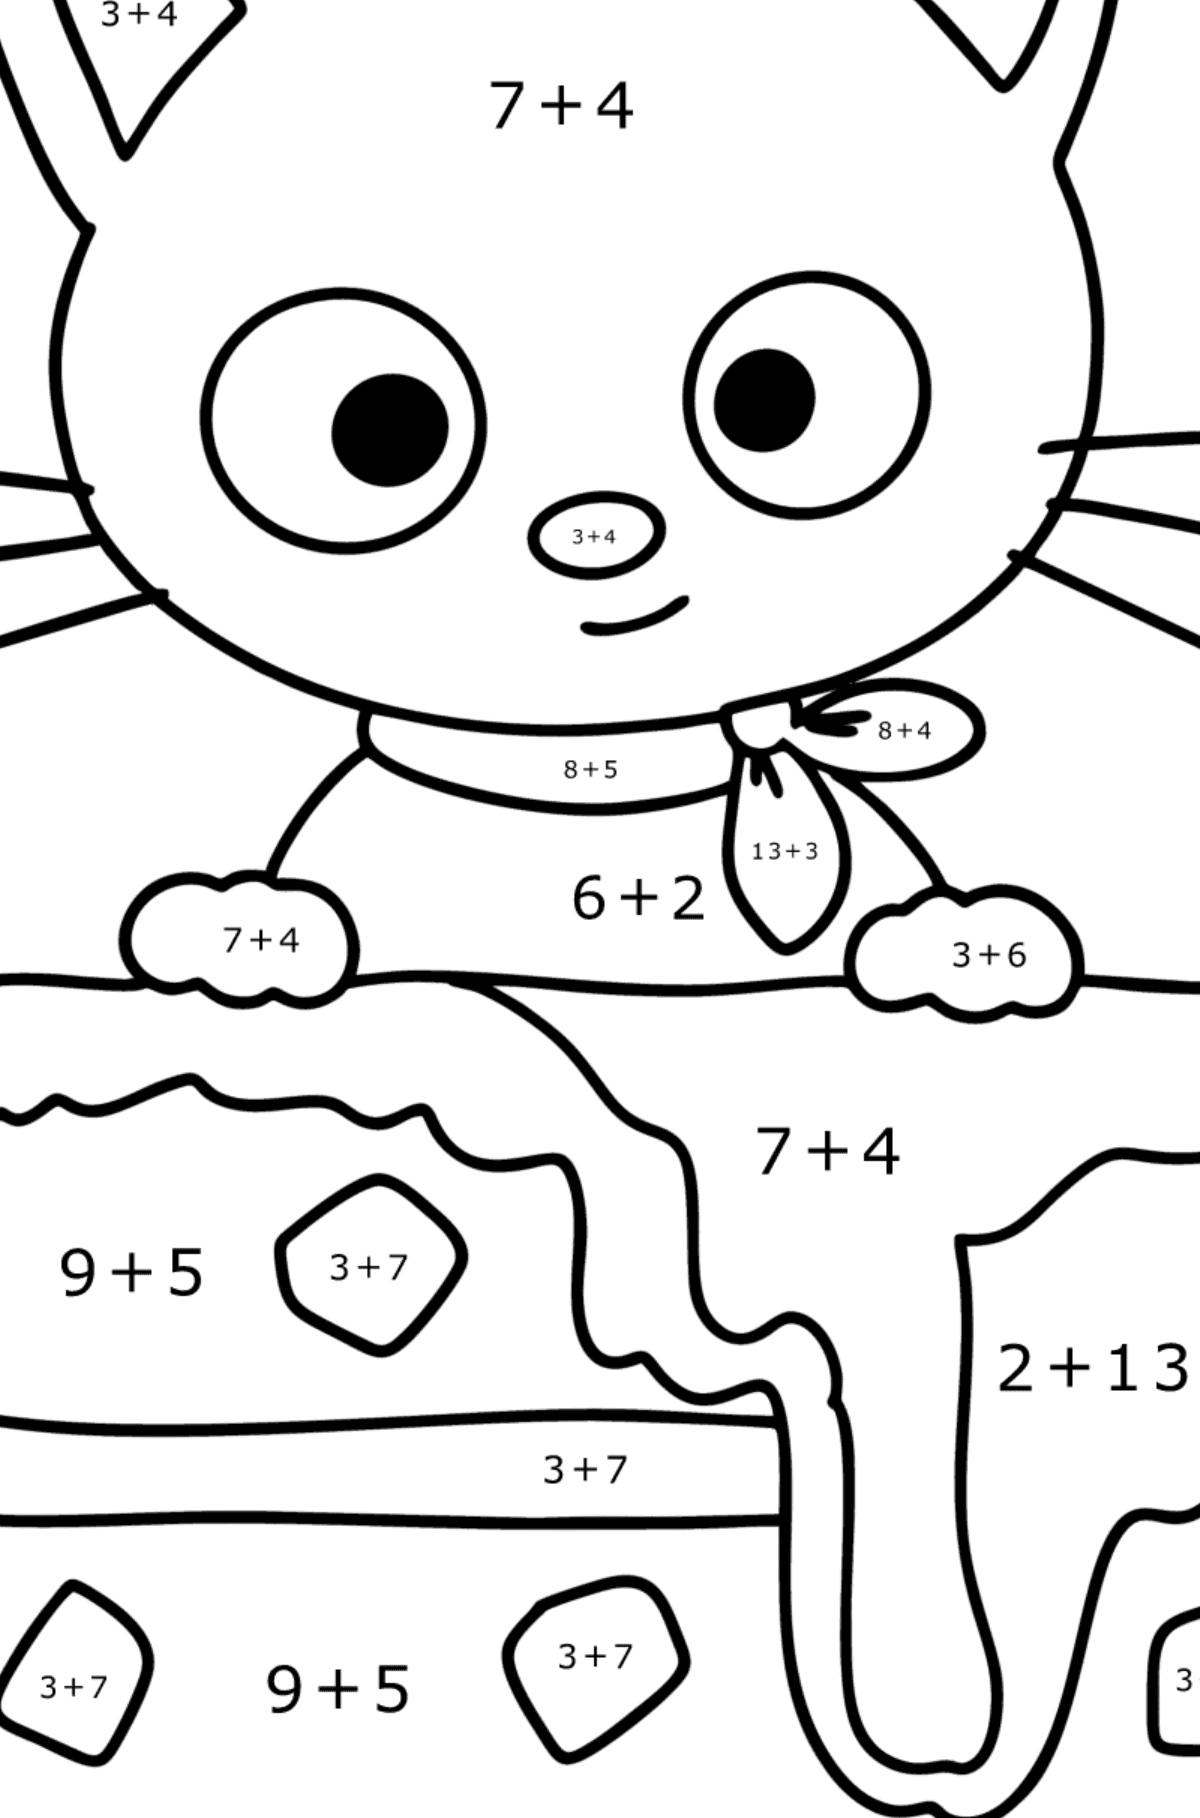 Boyama sayfası Chococat - Matematik Boyama - Toplama çocuklar için